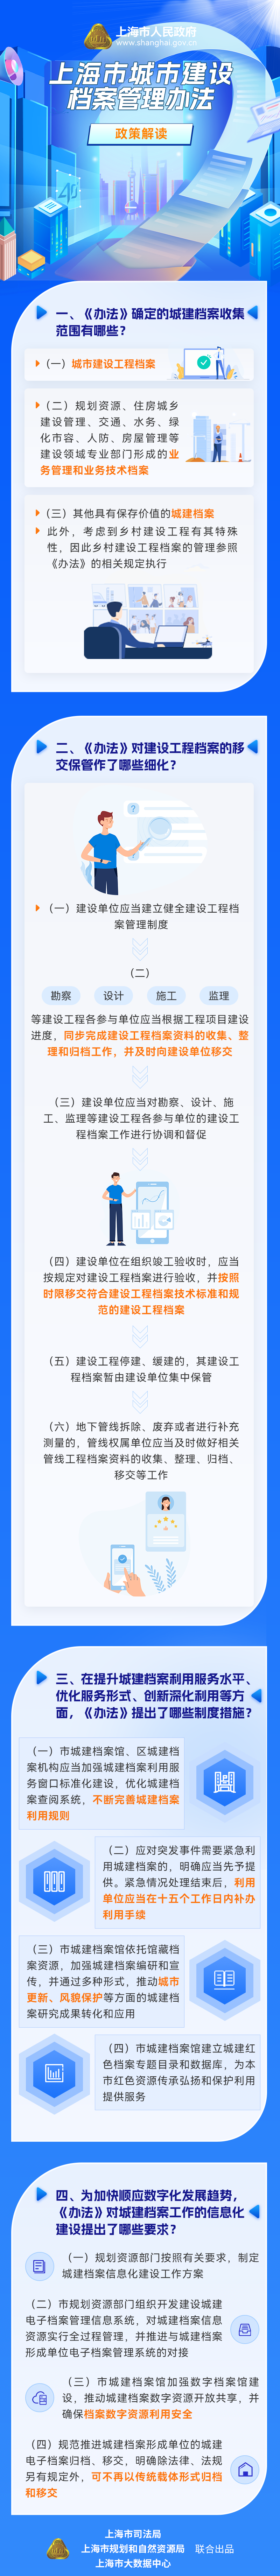 《上海市城市建设档案管理办法》政策图解.png